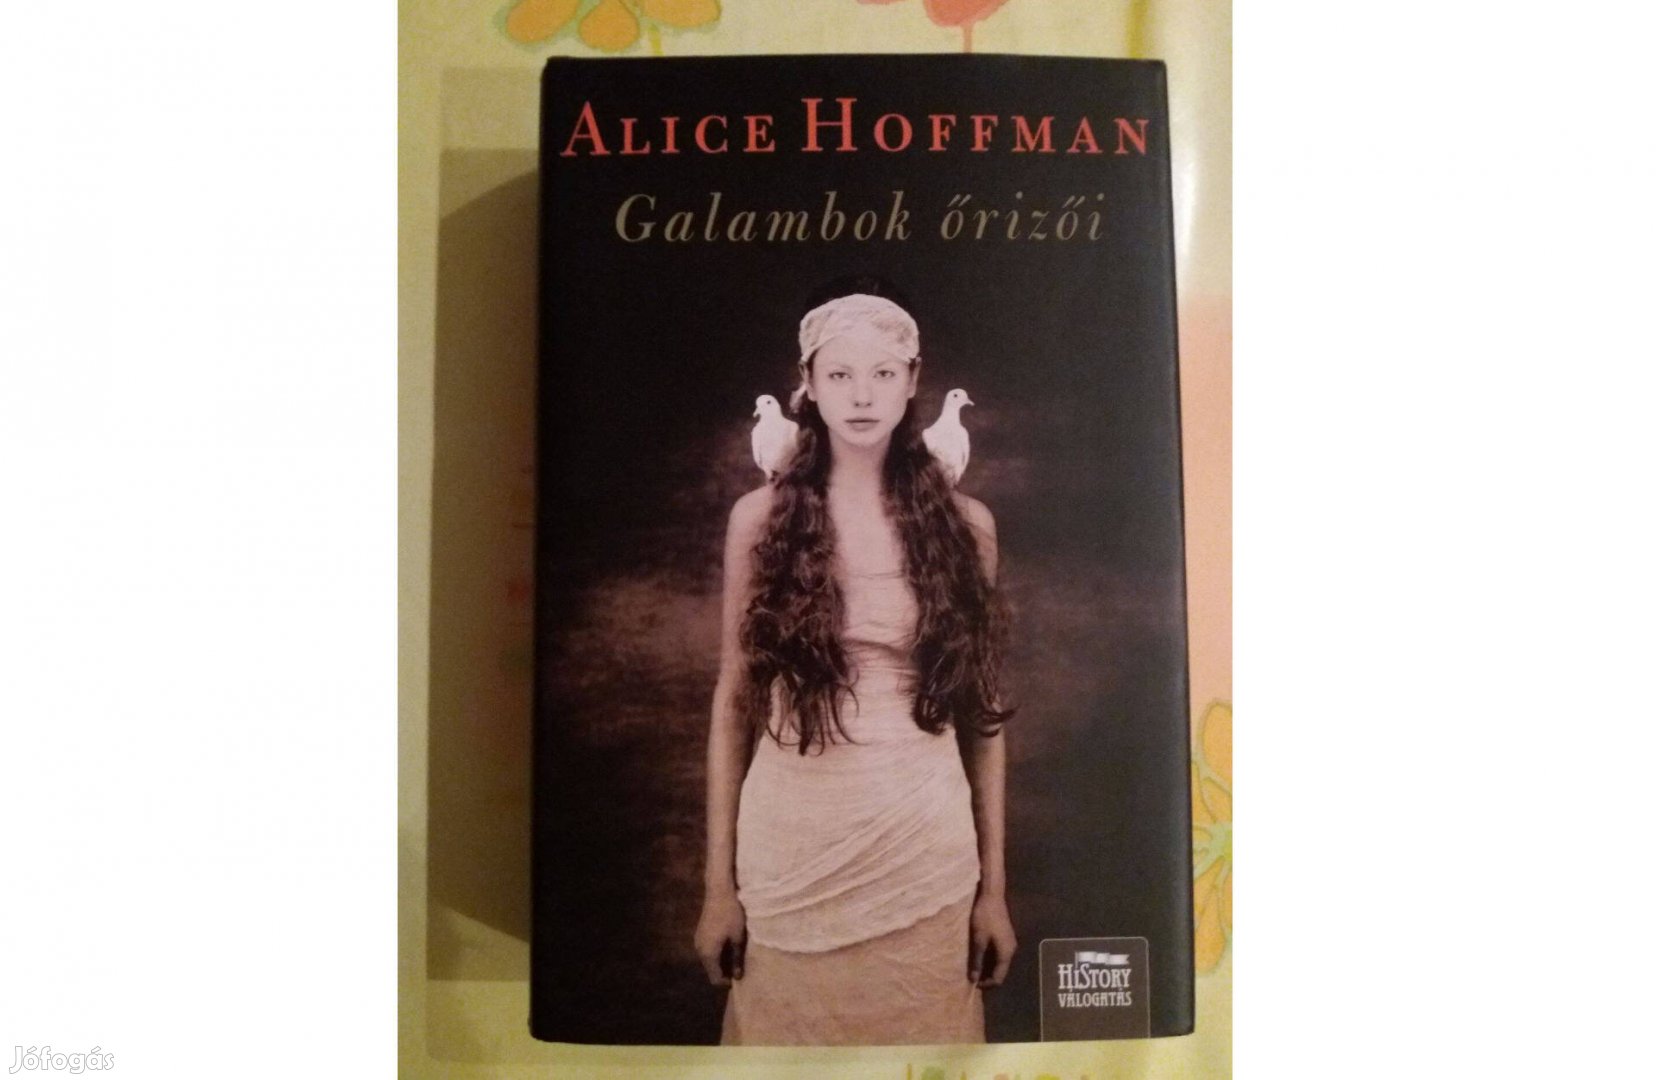 Alice Hoffman: Galambok őrizői